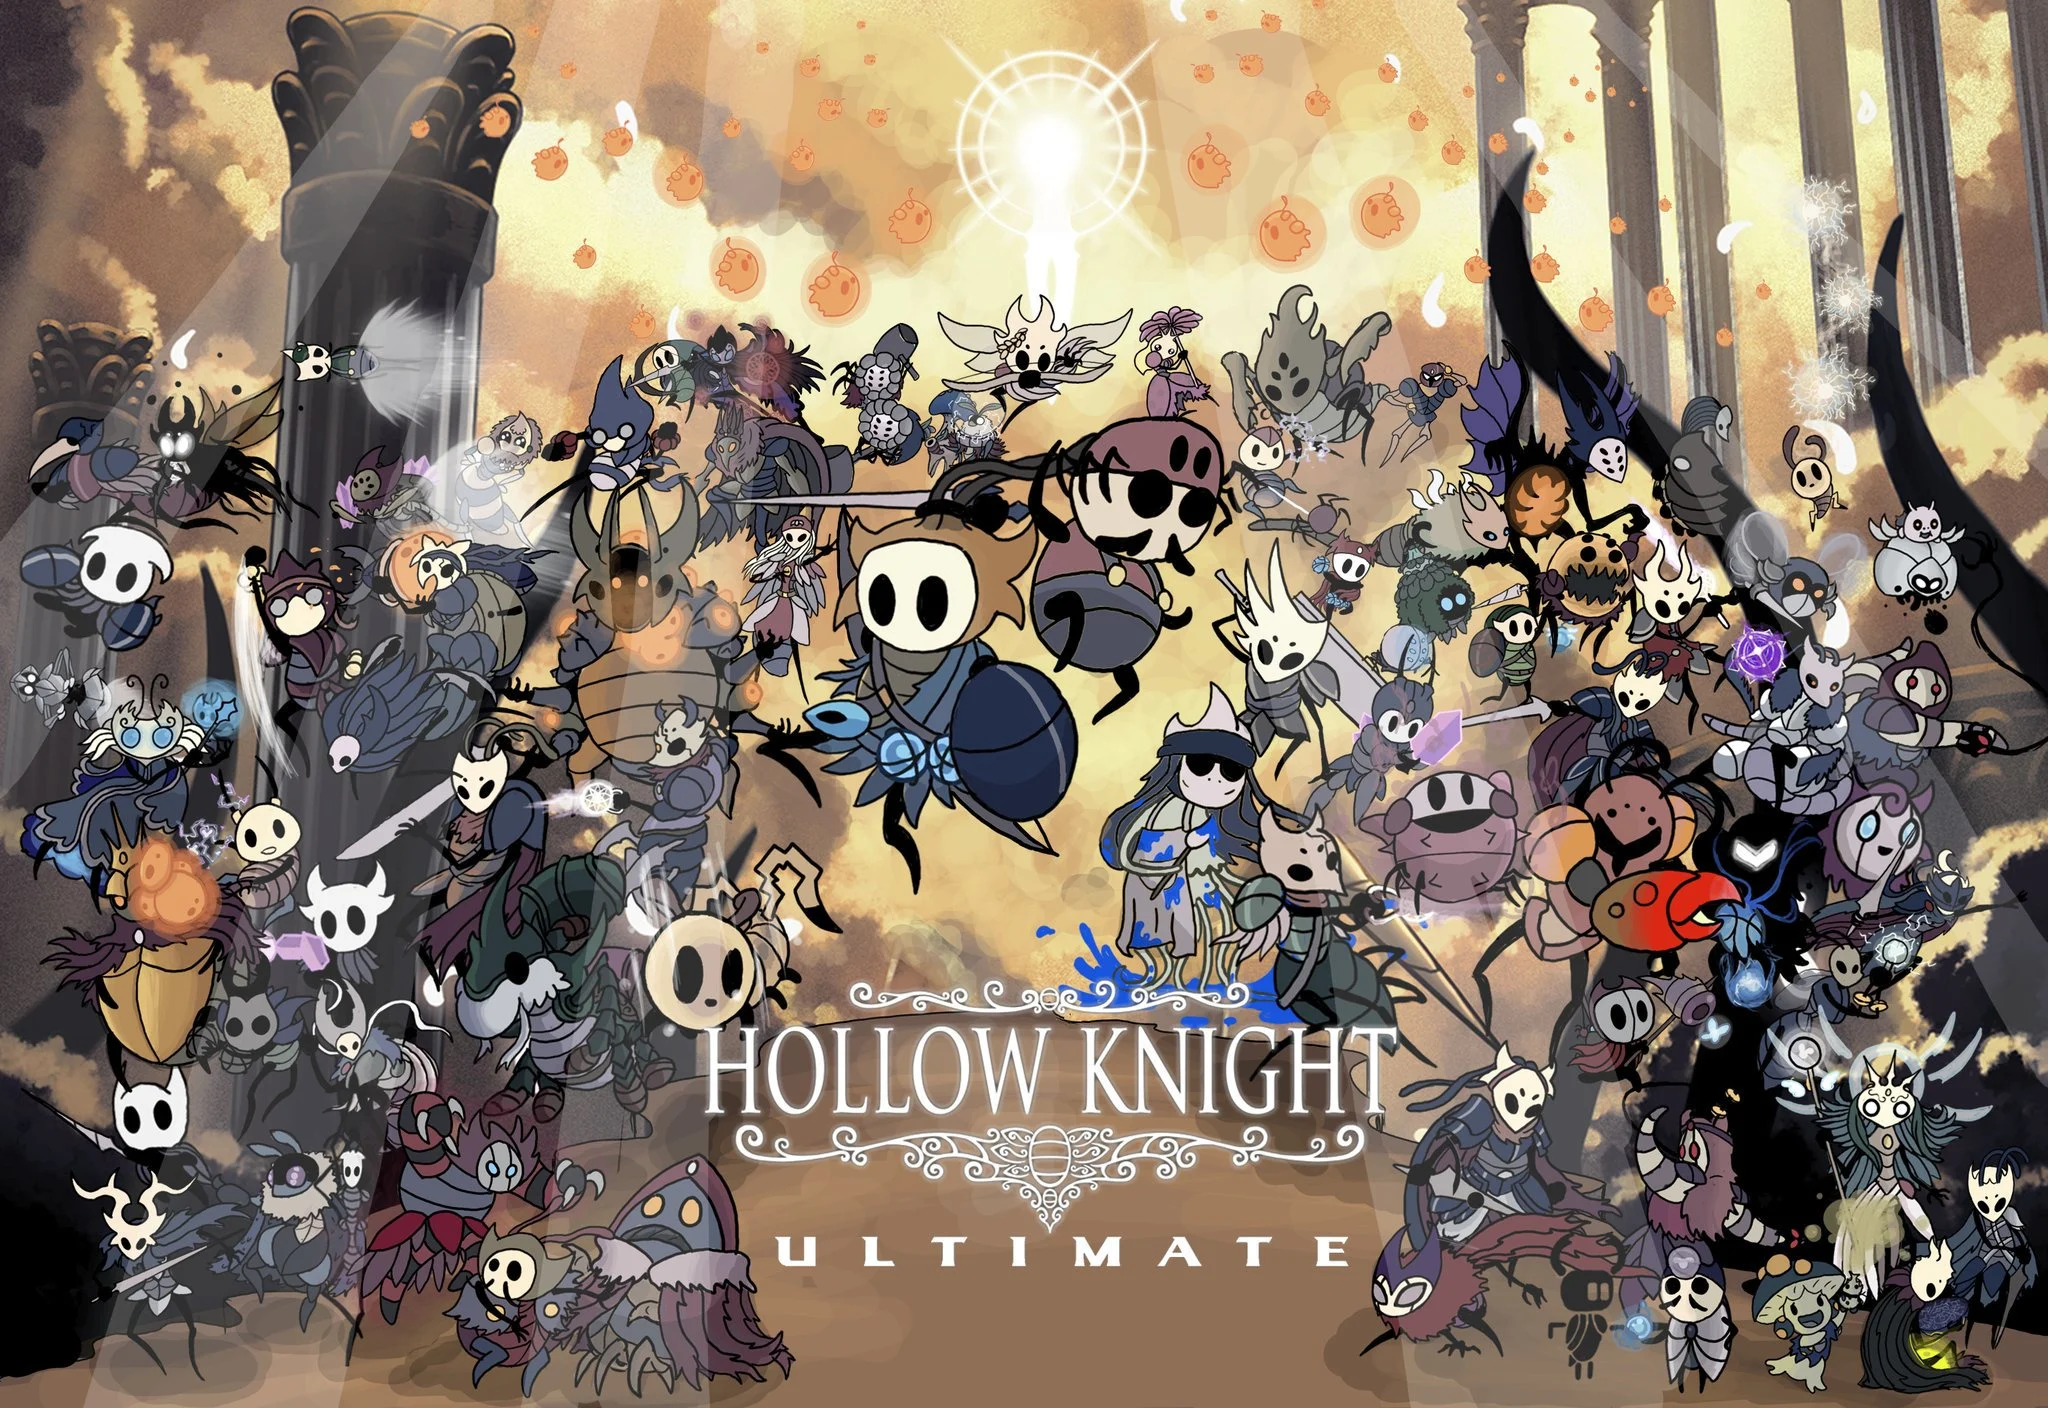 Um fã de Super Smash Bros. está reimaginando cada lutador como parte de Hollow Knight